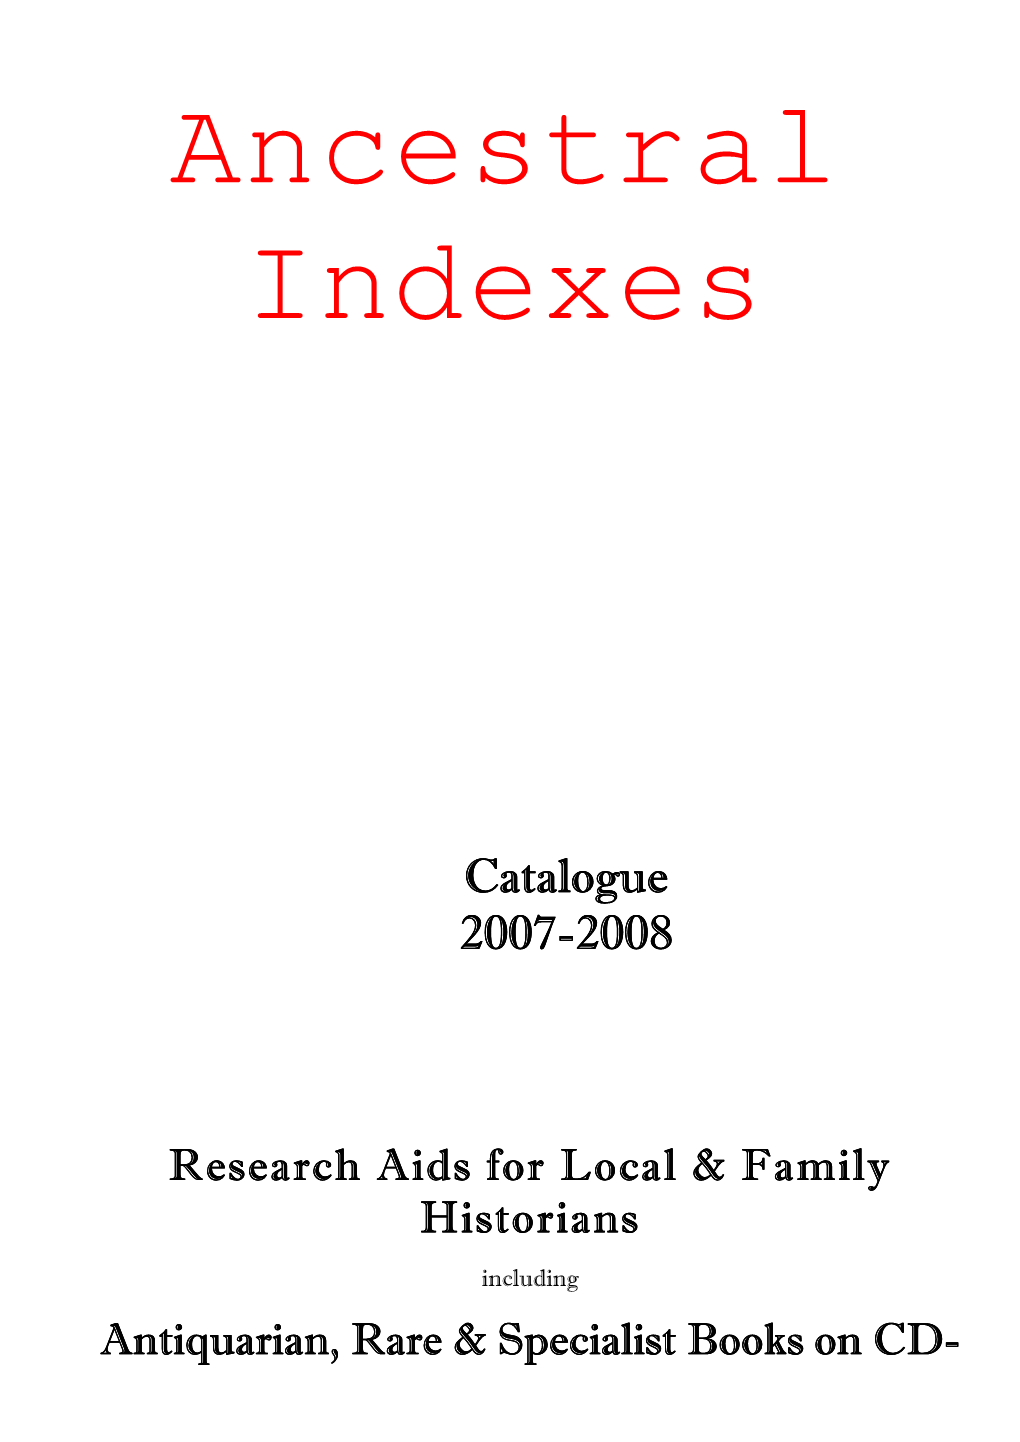 Catalogue 2007-2008